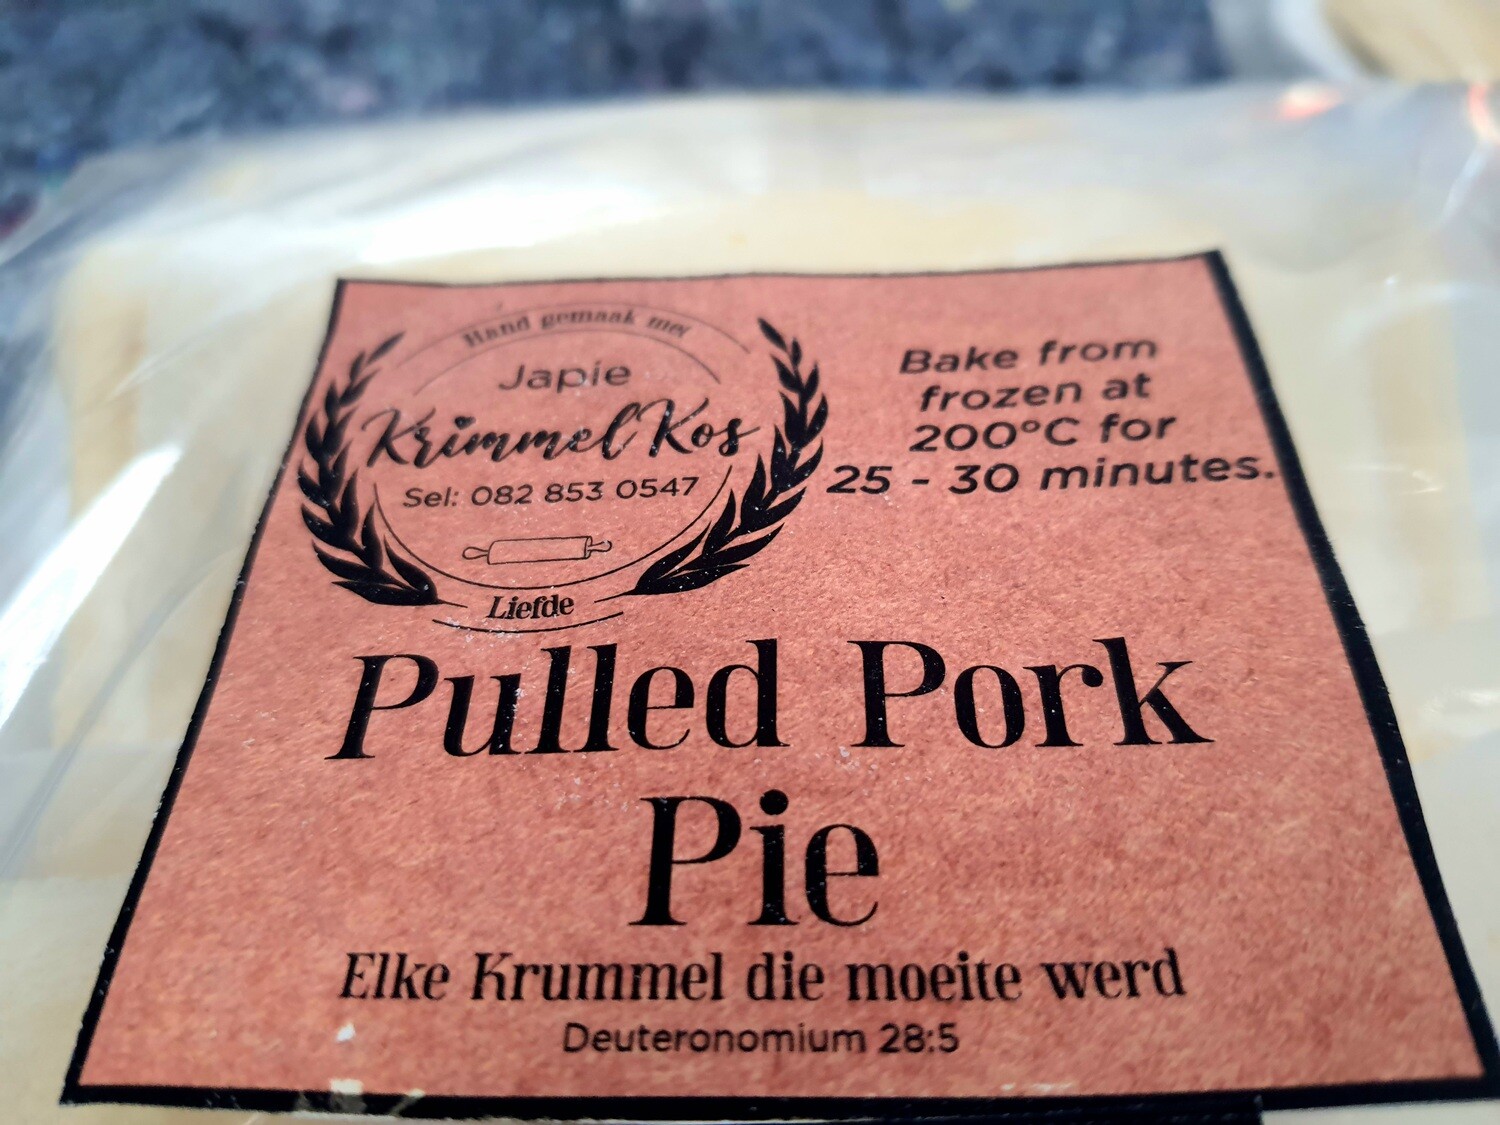 Pies Pulled Pork 4 pack